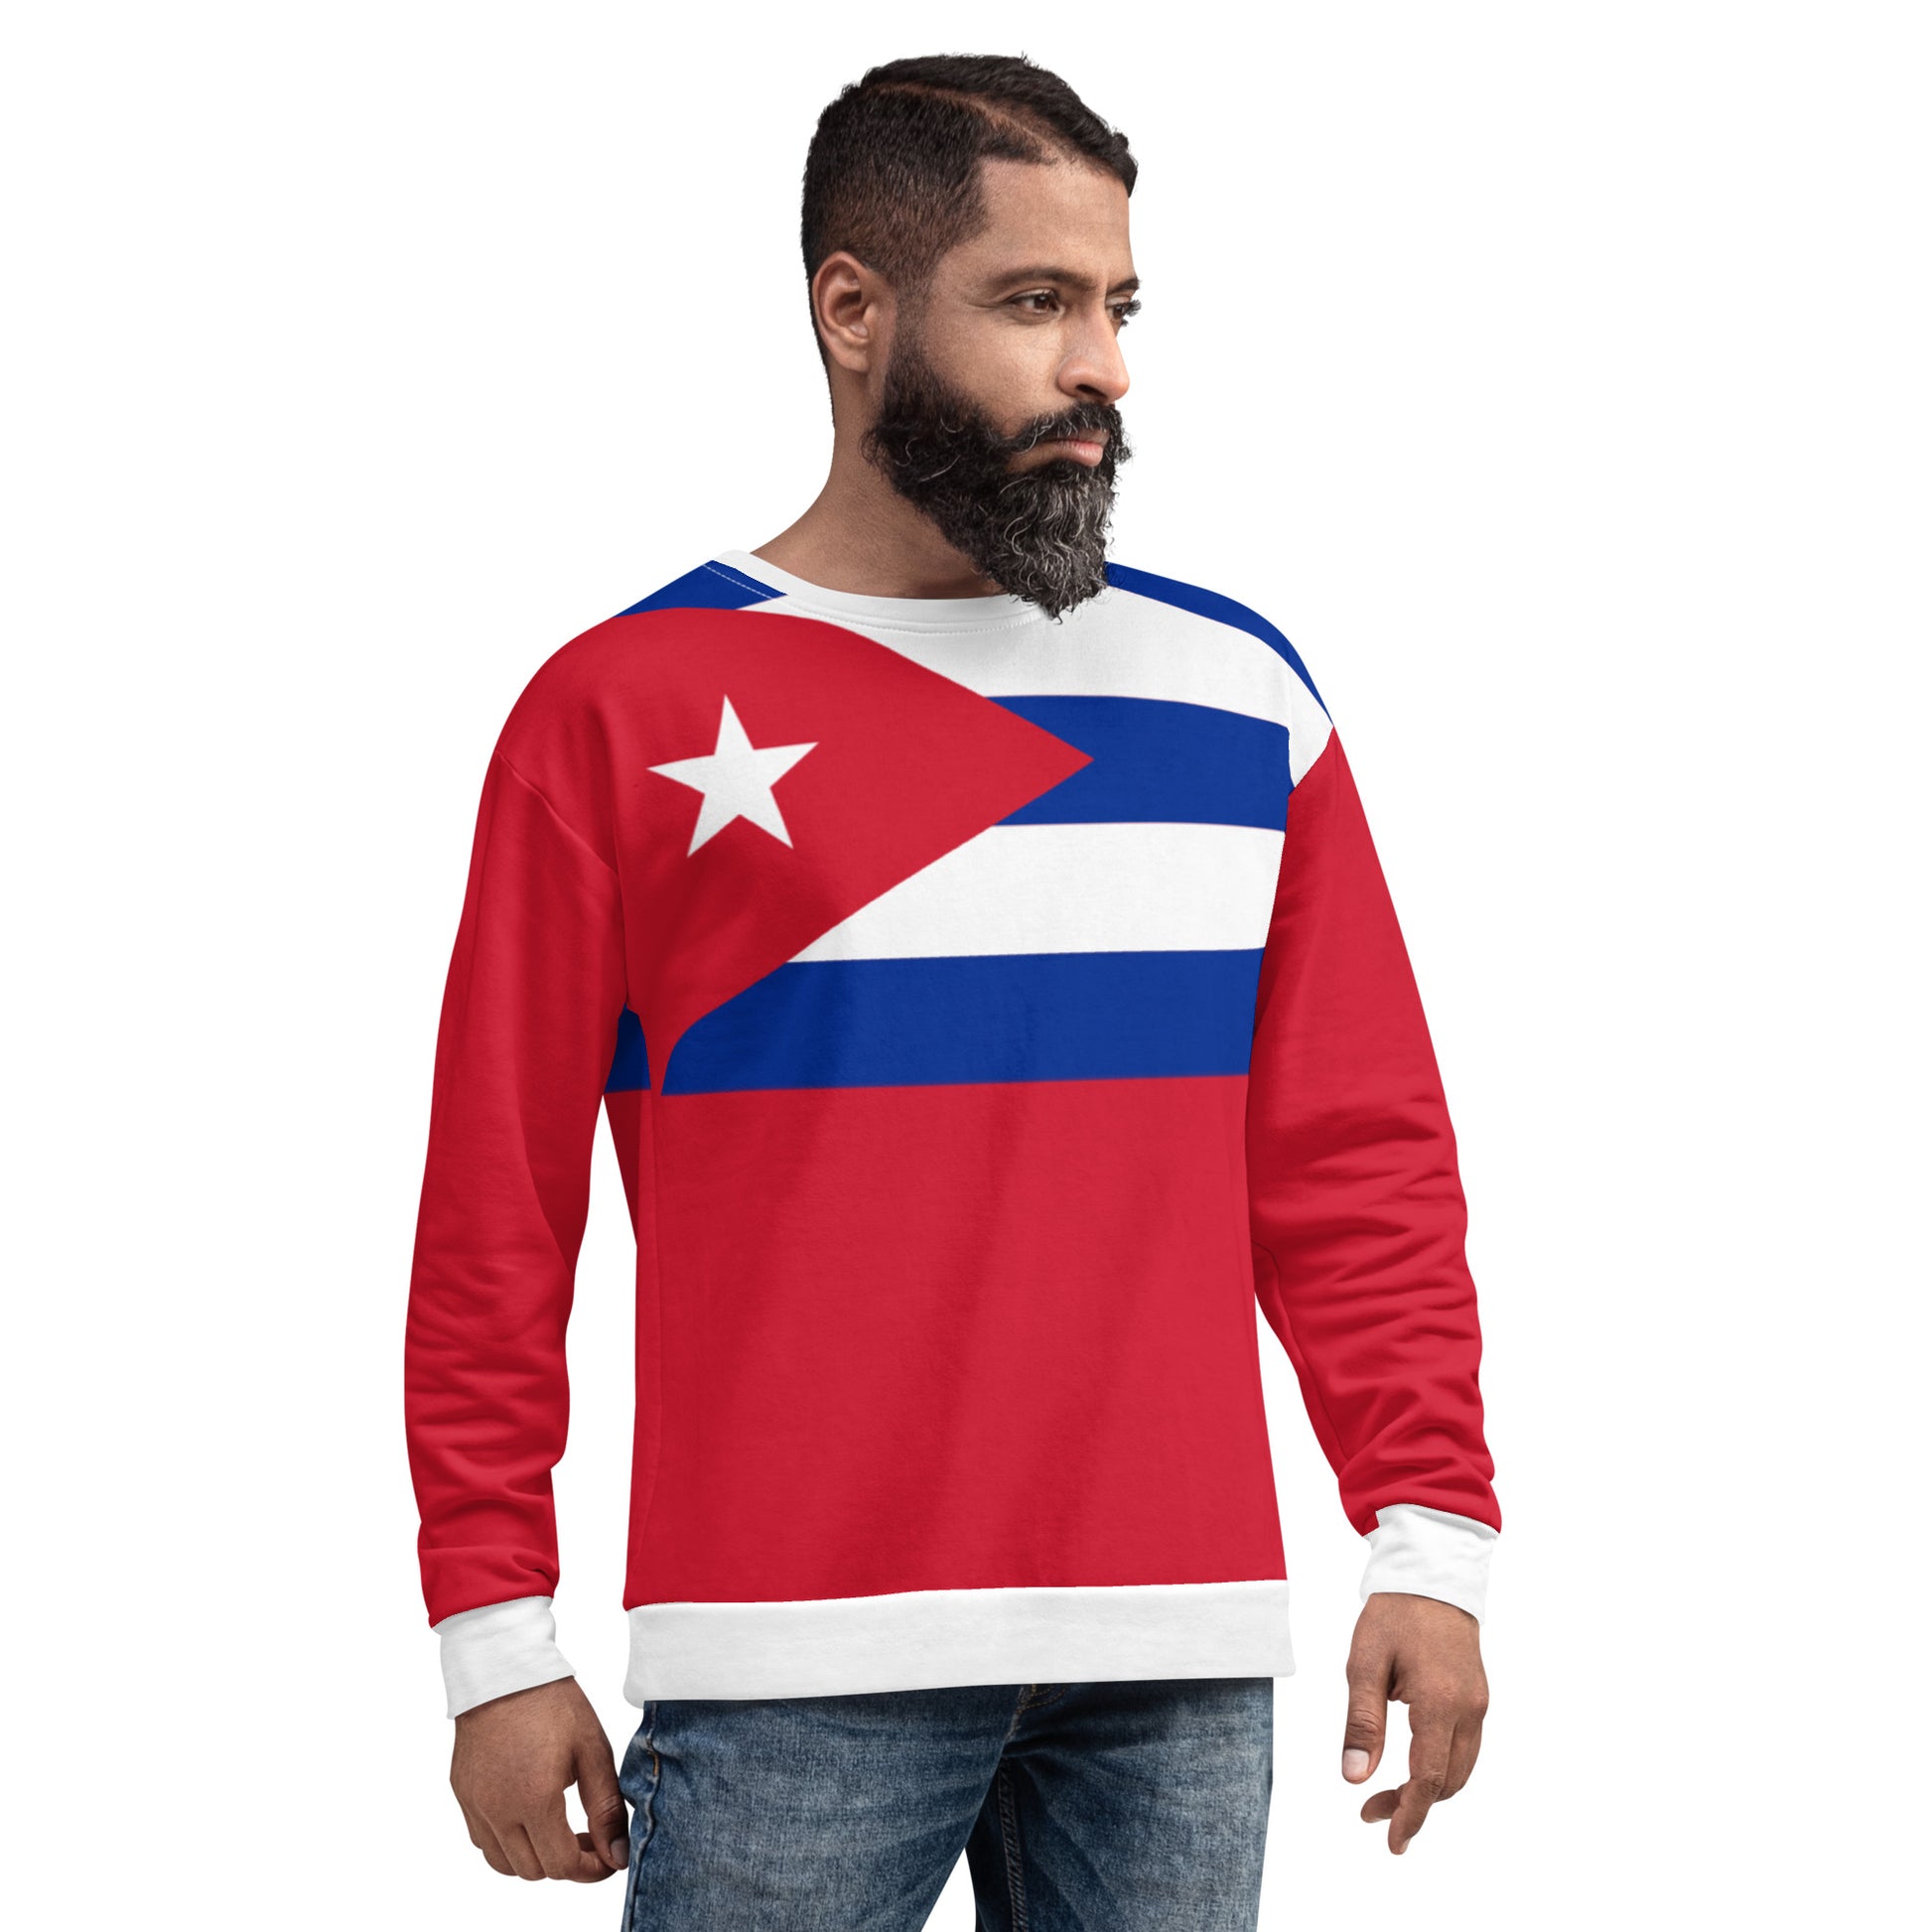 Cuba Sweatshirt / Flag Sweatshirt / Patriotic Sweatshirt